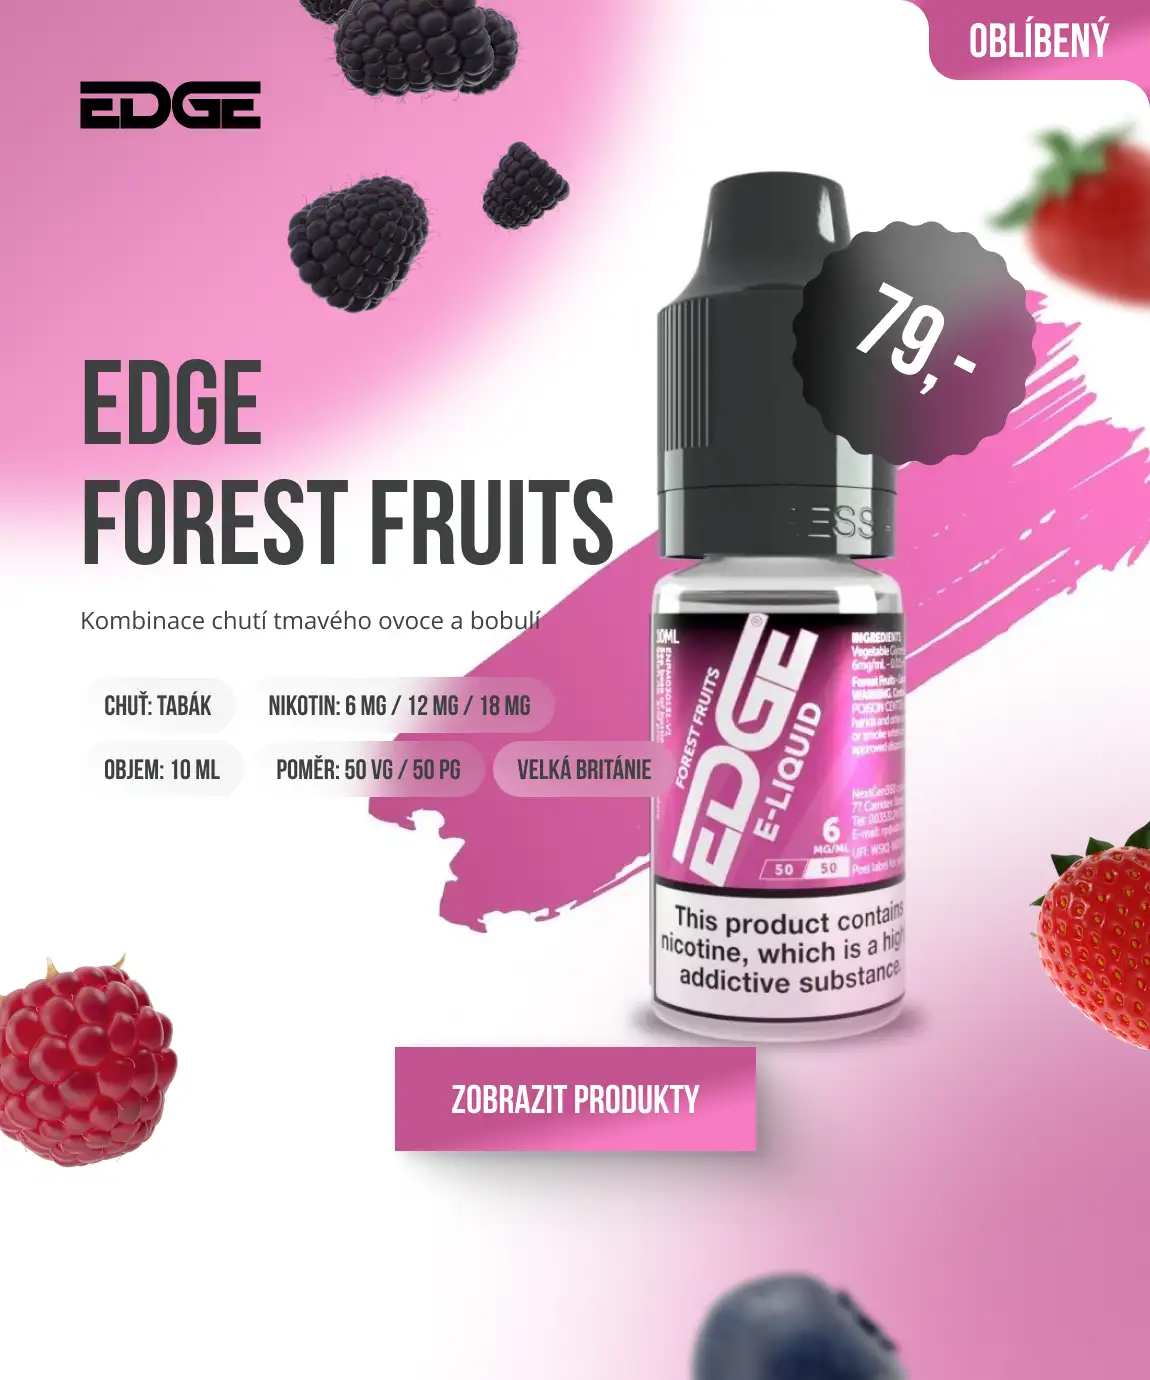 EDGE FOREST FRUITS: Kombinace chutí tmavého ovoce a bobulí